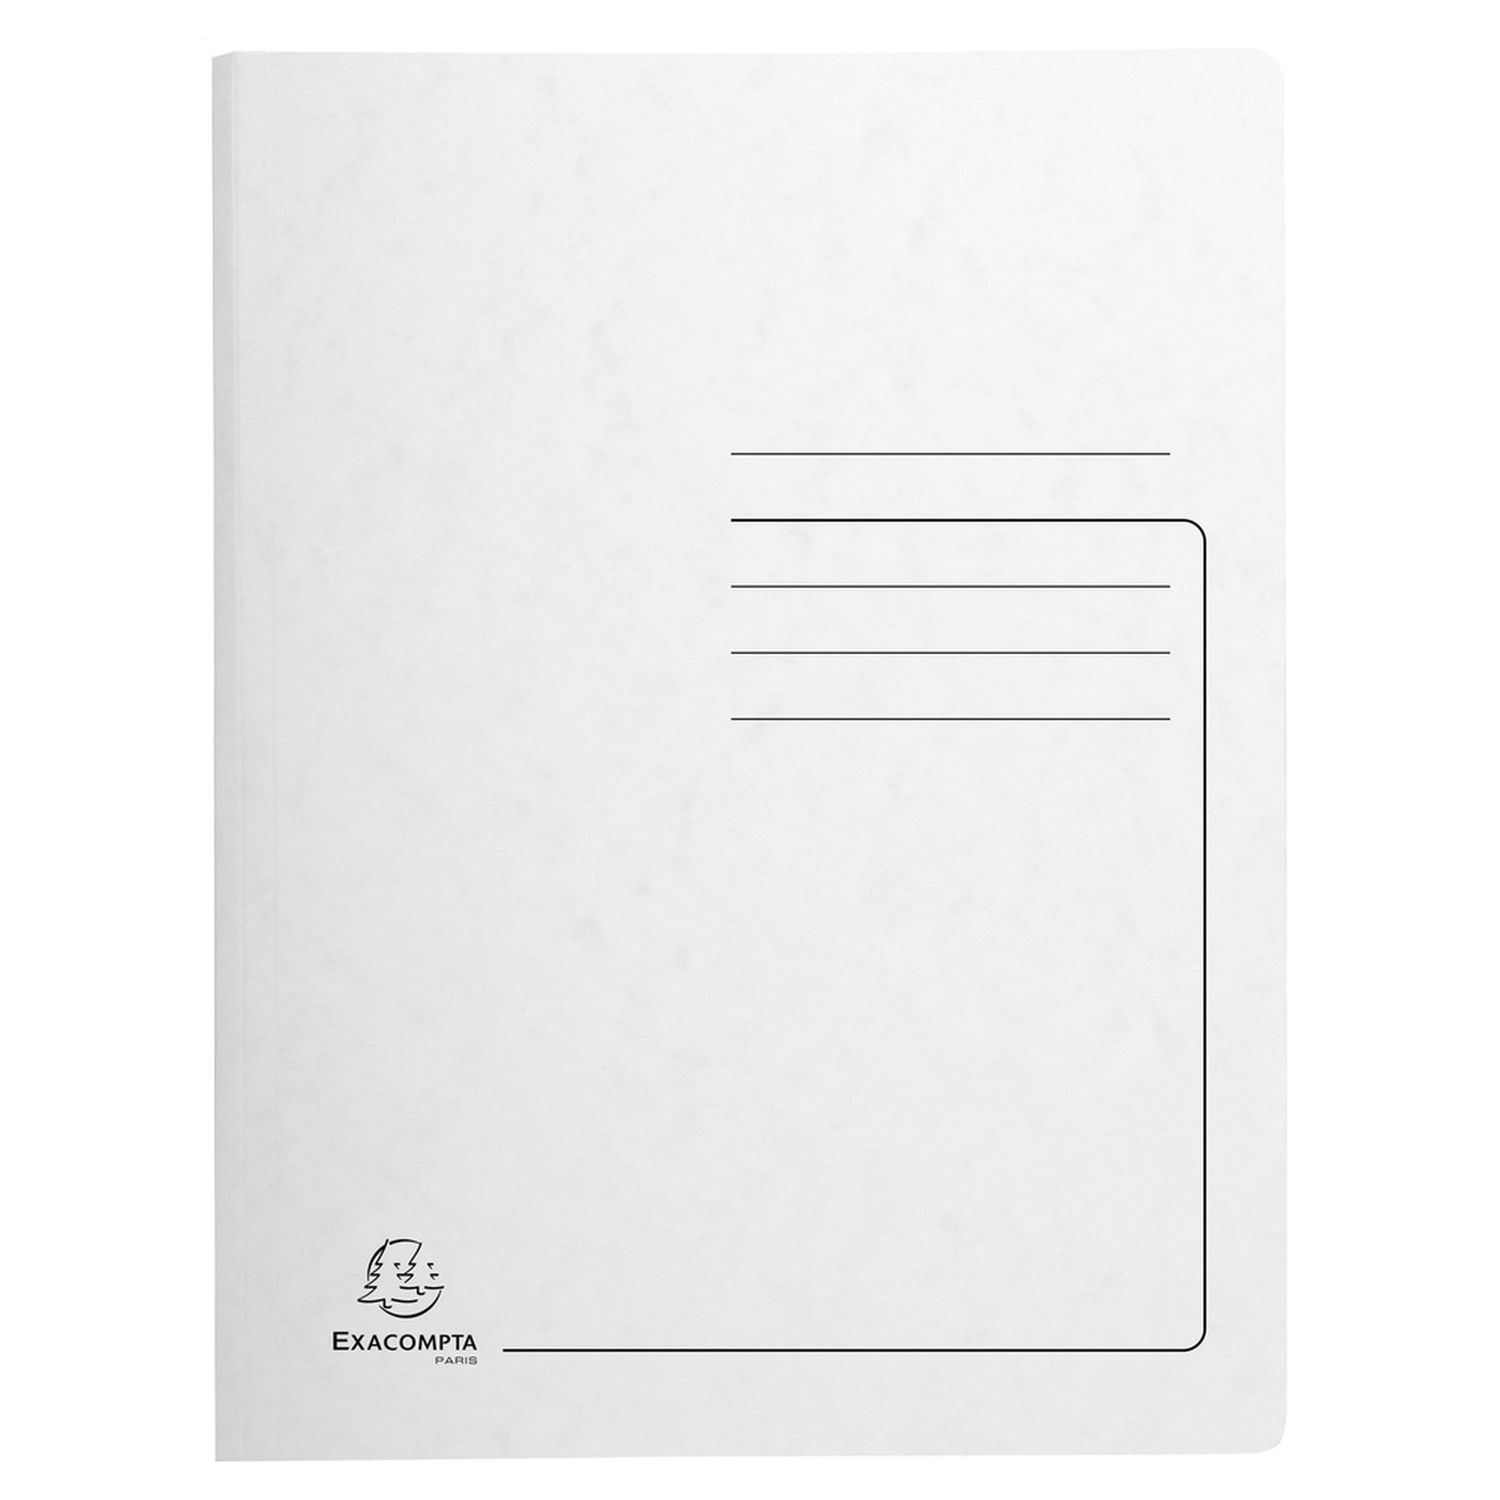 Spiralhefter - A4, 300 Blatt, Colorspan-Karton, 355 g/qm, weiß